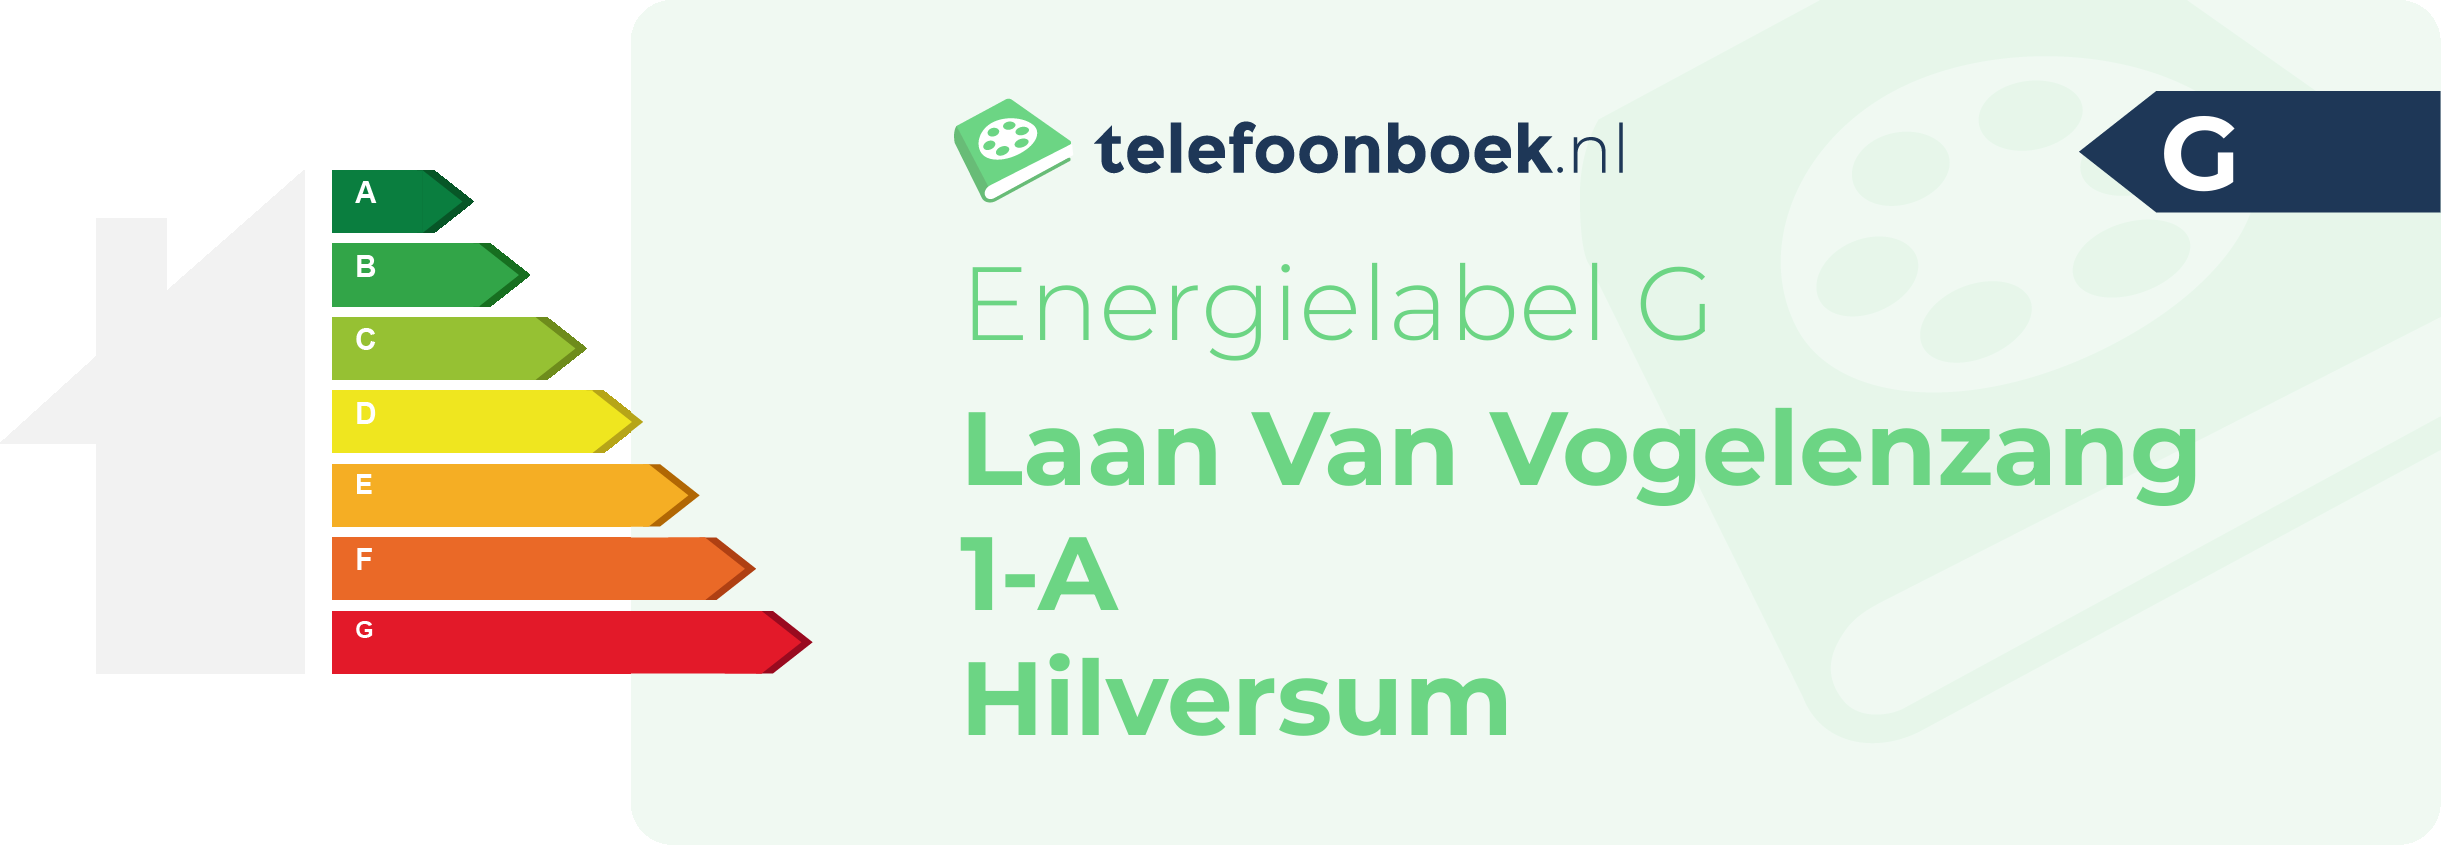 Energielabel Laan Van Vogelenzang 1-A Hilversum